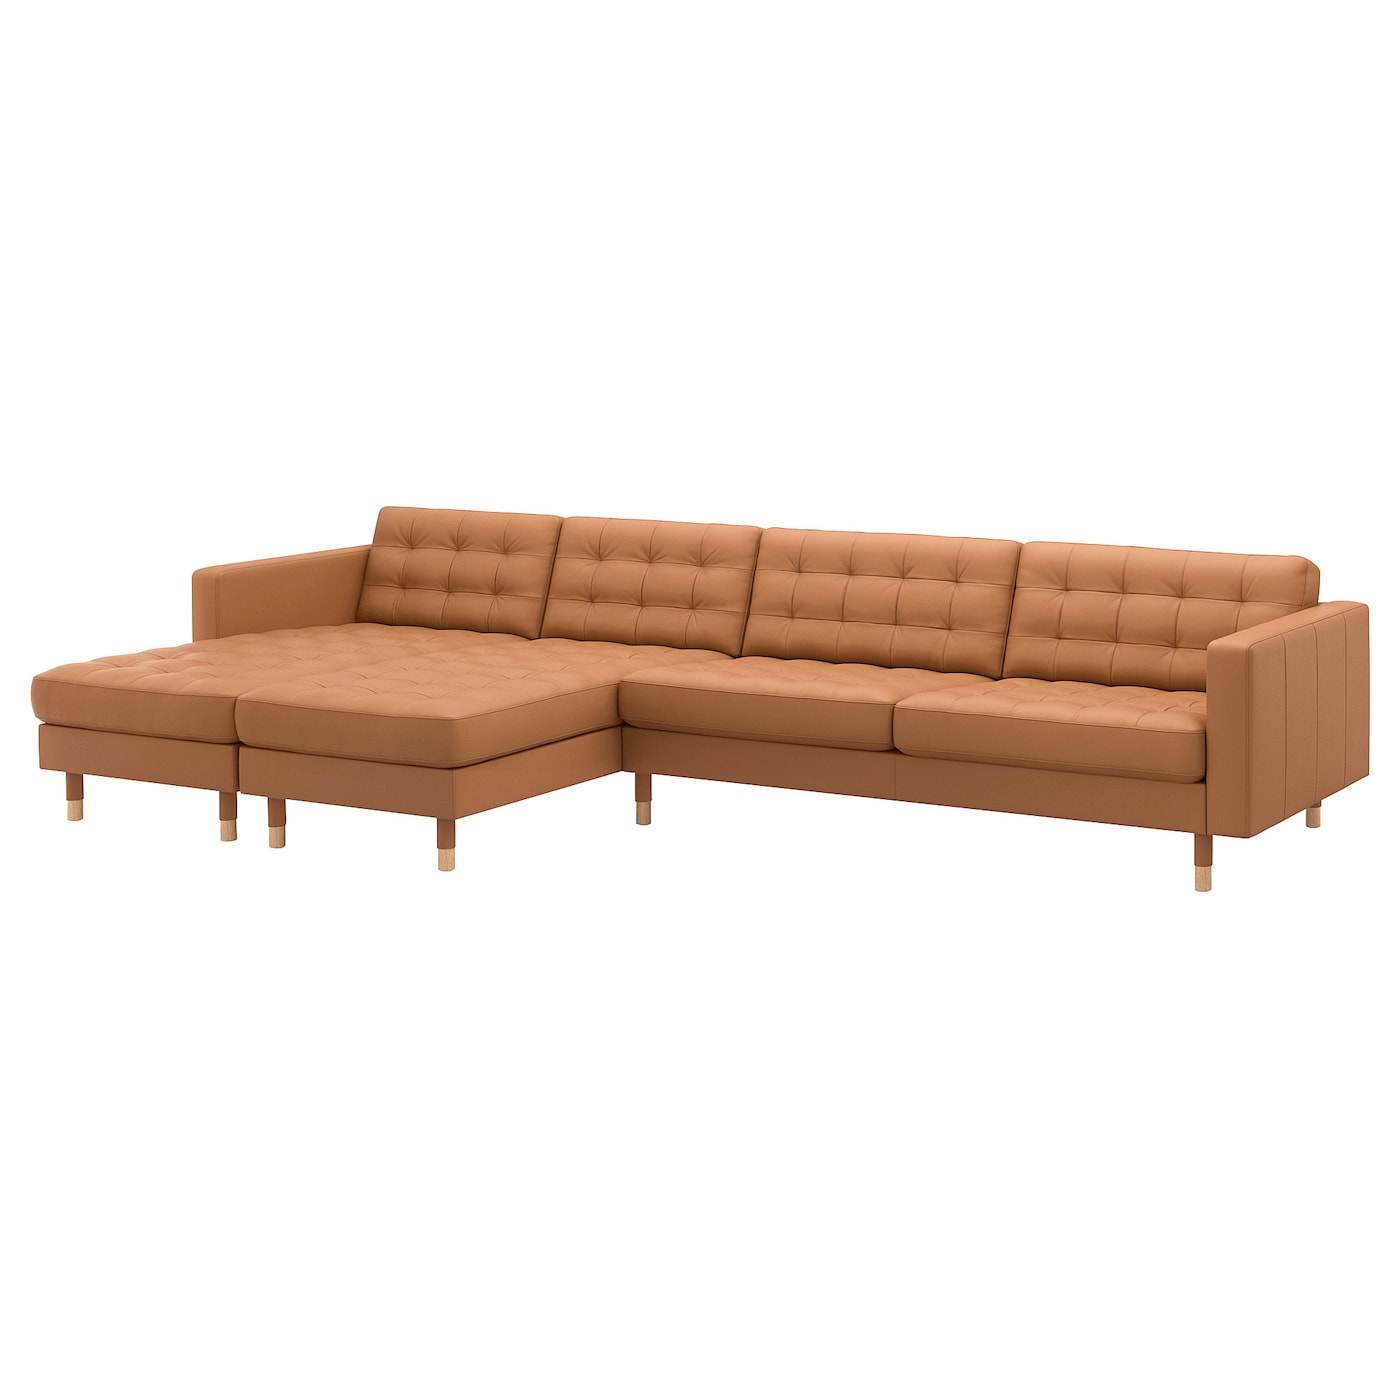 5-местный диван с шезлонгом - IKEA LANDSKRONA, 360х158х78 см, оранжевый, кожа, ЛАНДСКРУНА ИКЕА